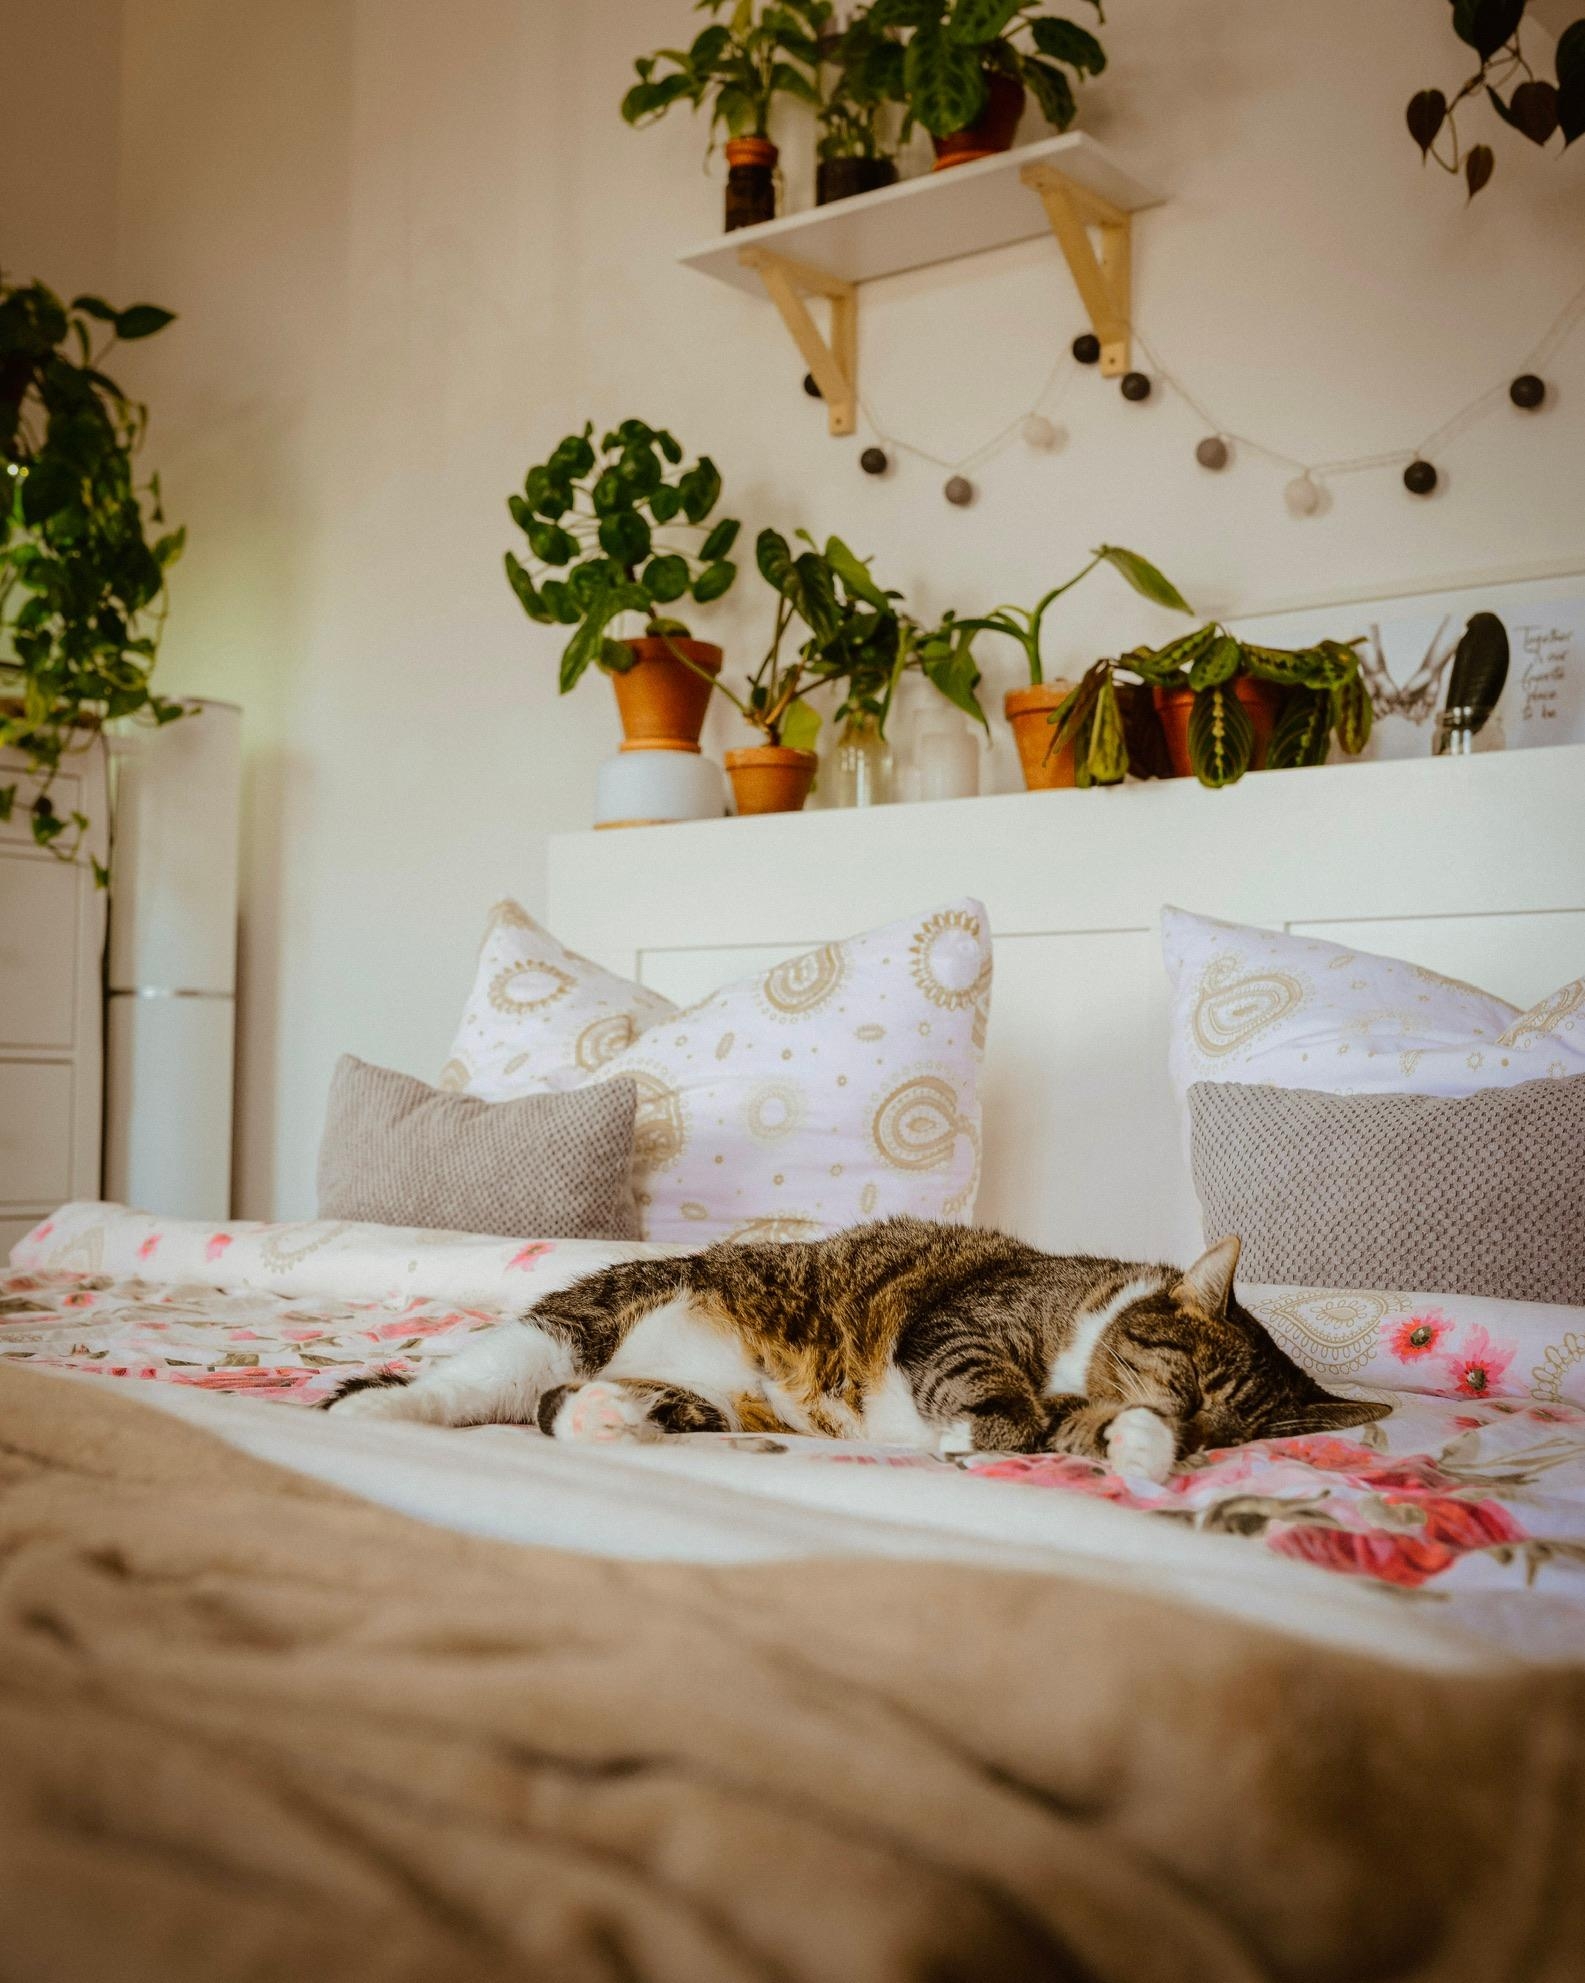 Auch im Schlafzimmer dürfen Pflanzen nicht fehlen - die Katze natürlich auch nicht 😂 #pflanzenliebe #katzenliebe